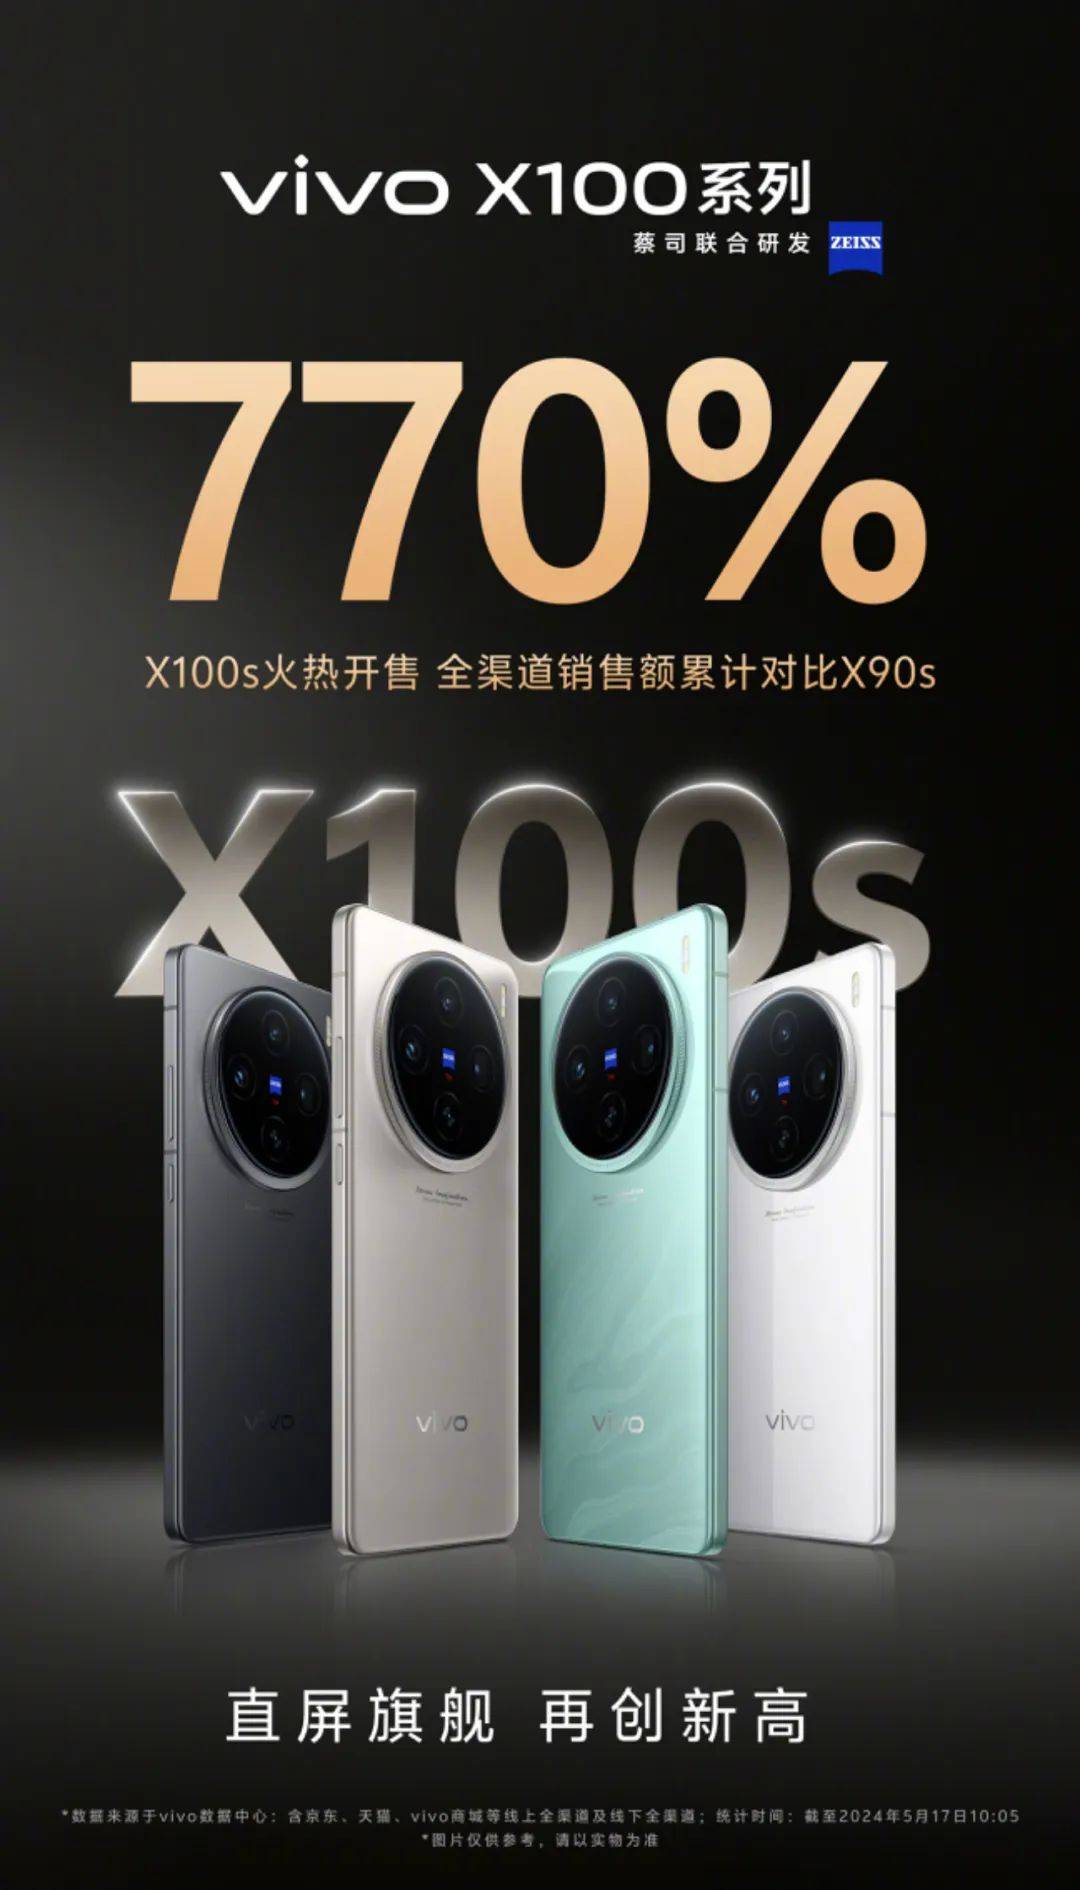 【行情】vivoX100s系列首销战报出炉 销售额累计对比上代达770%